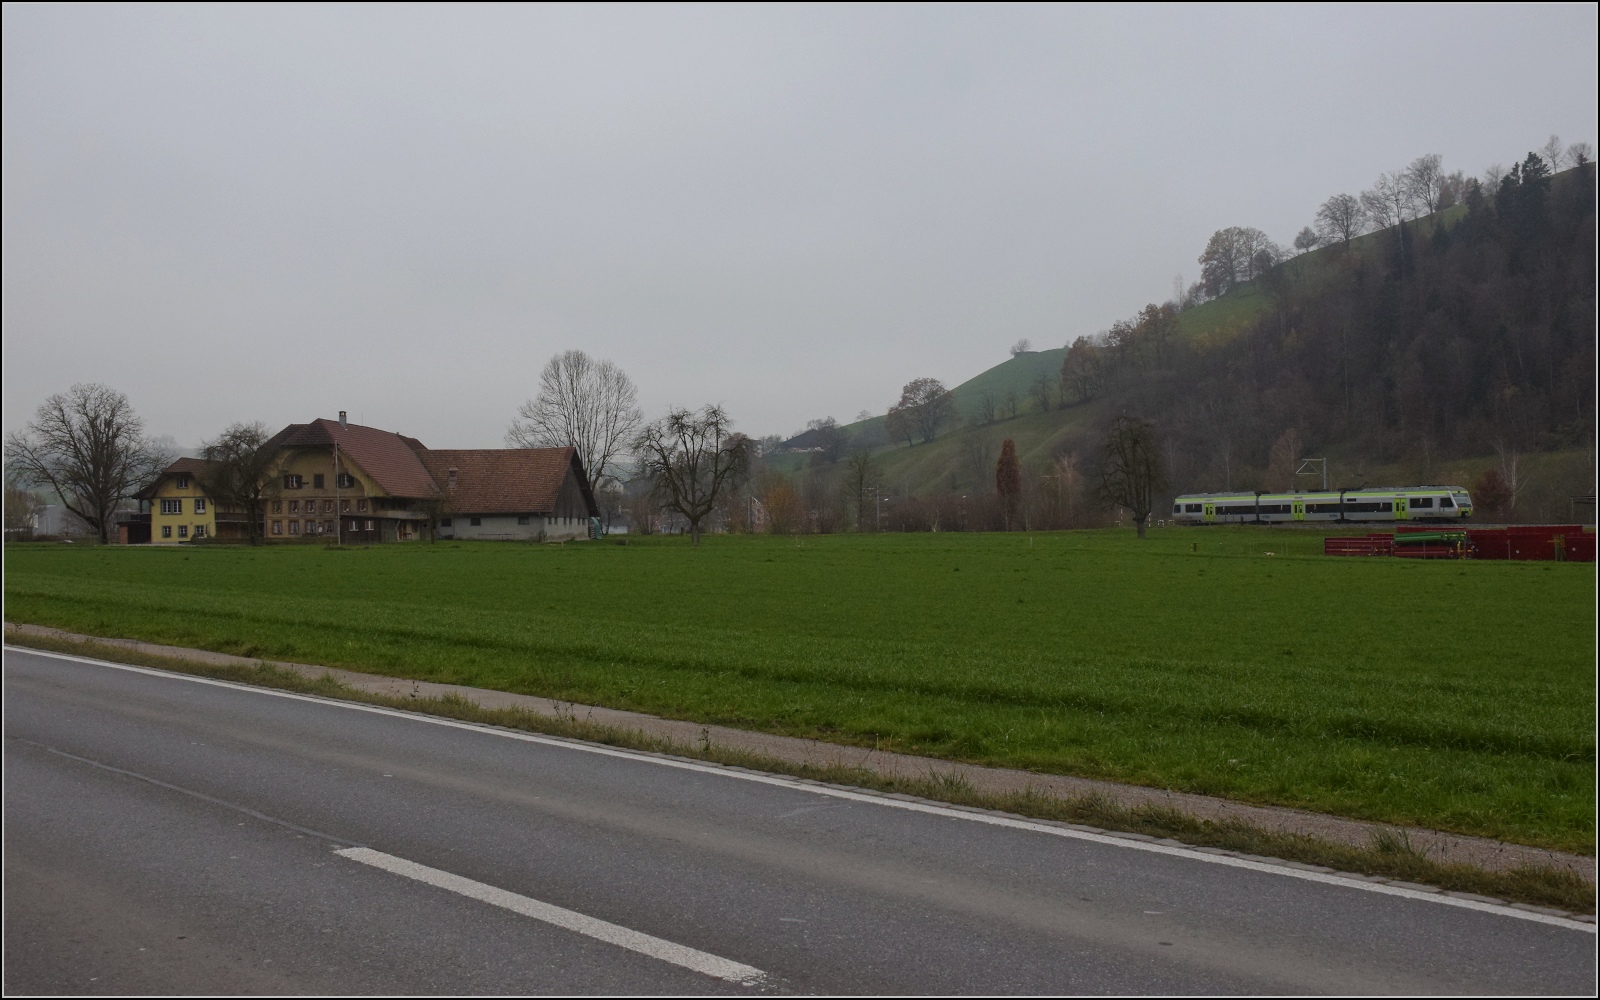 Im Stile des Orientexpress.

In Huswil hatte ich mich verzockt und die alternative Route über Langenthal und Lenzburg vergessen. Noch ein Nina-Bild ohne viele Schäfchen... November 2022.